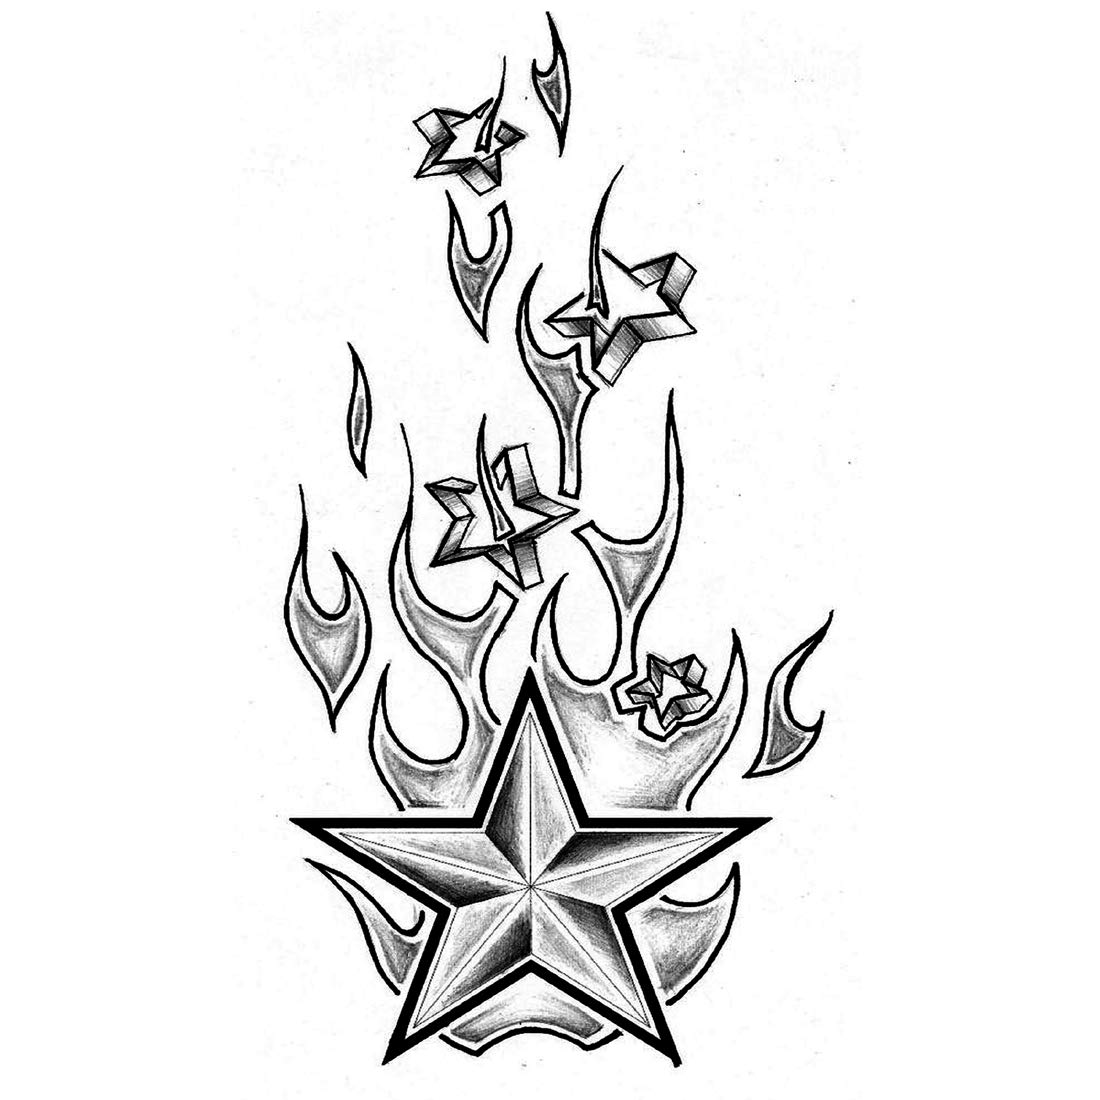 new star tattoo designs ideas HD video | star tattoo designs ideas | tattoo  designs HD video | - YouTube